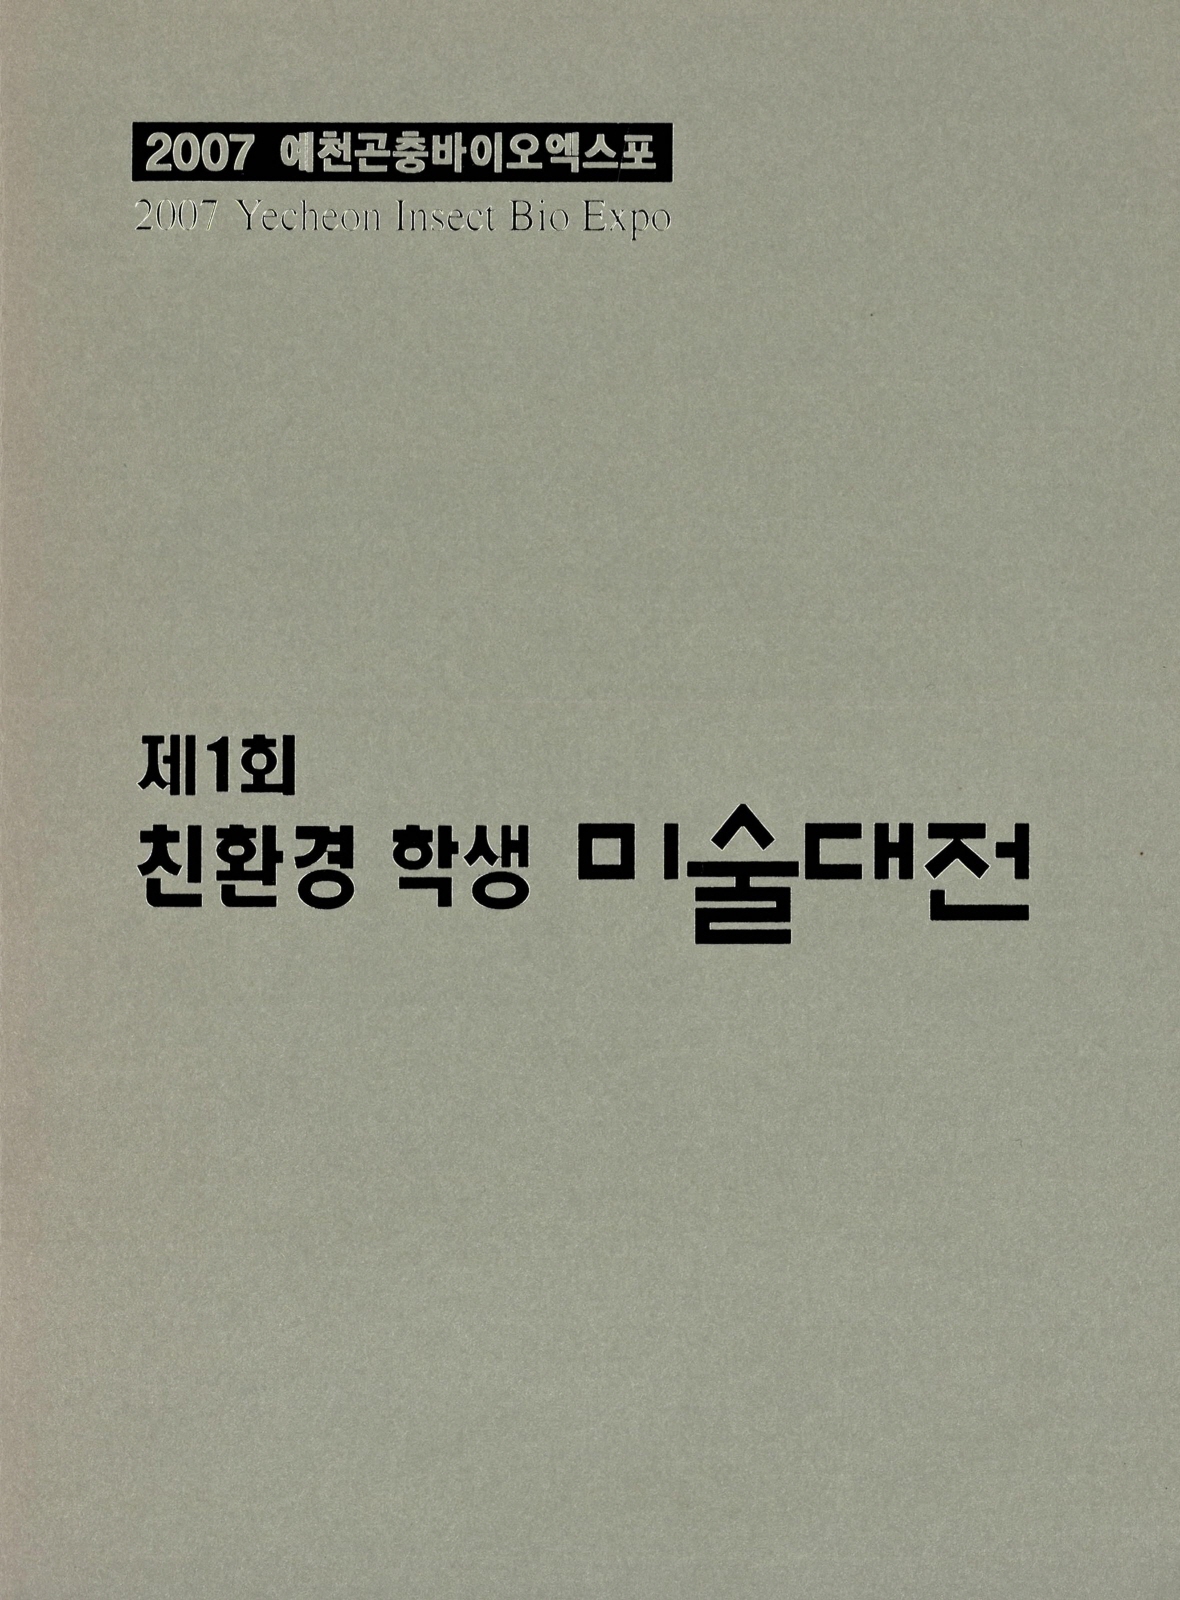 2007 예천곤충바이오엑스포 제1회 친환경 학생 미술대전